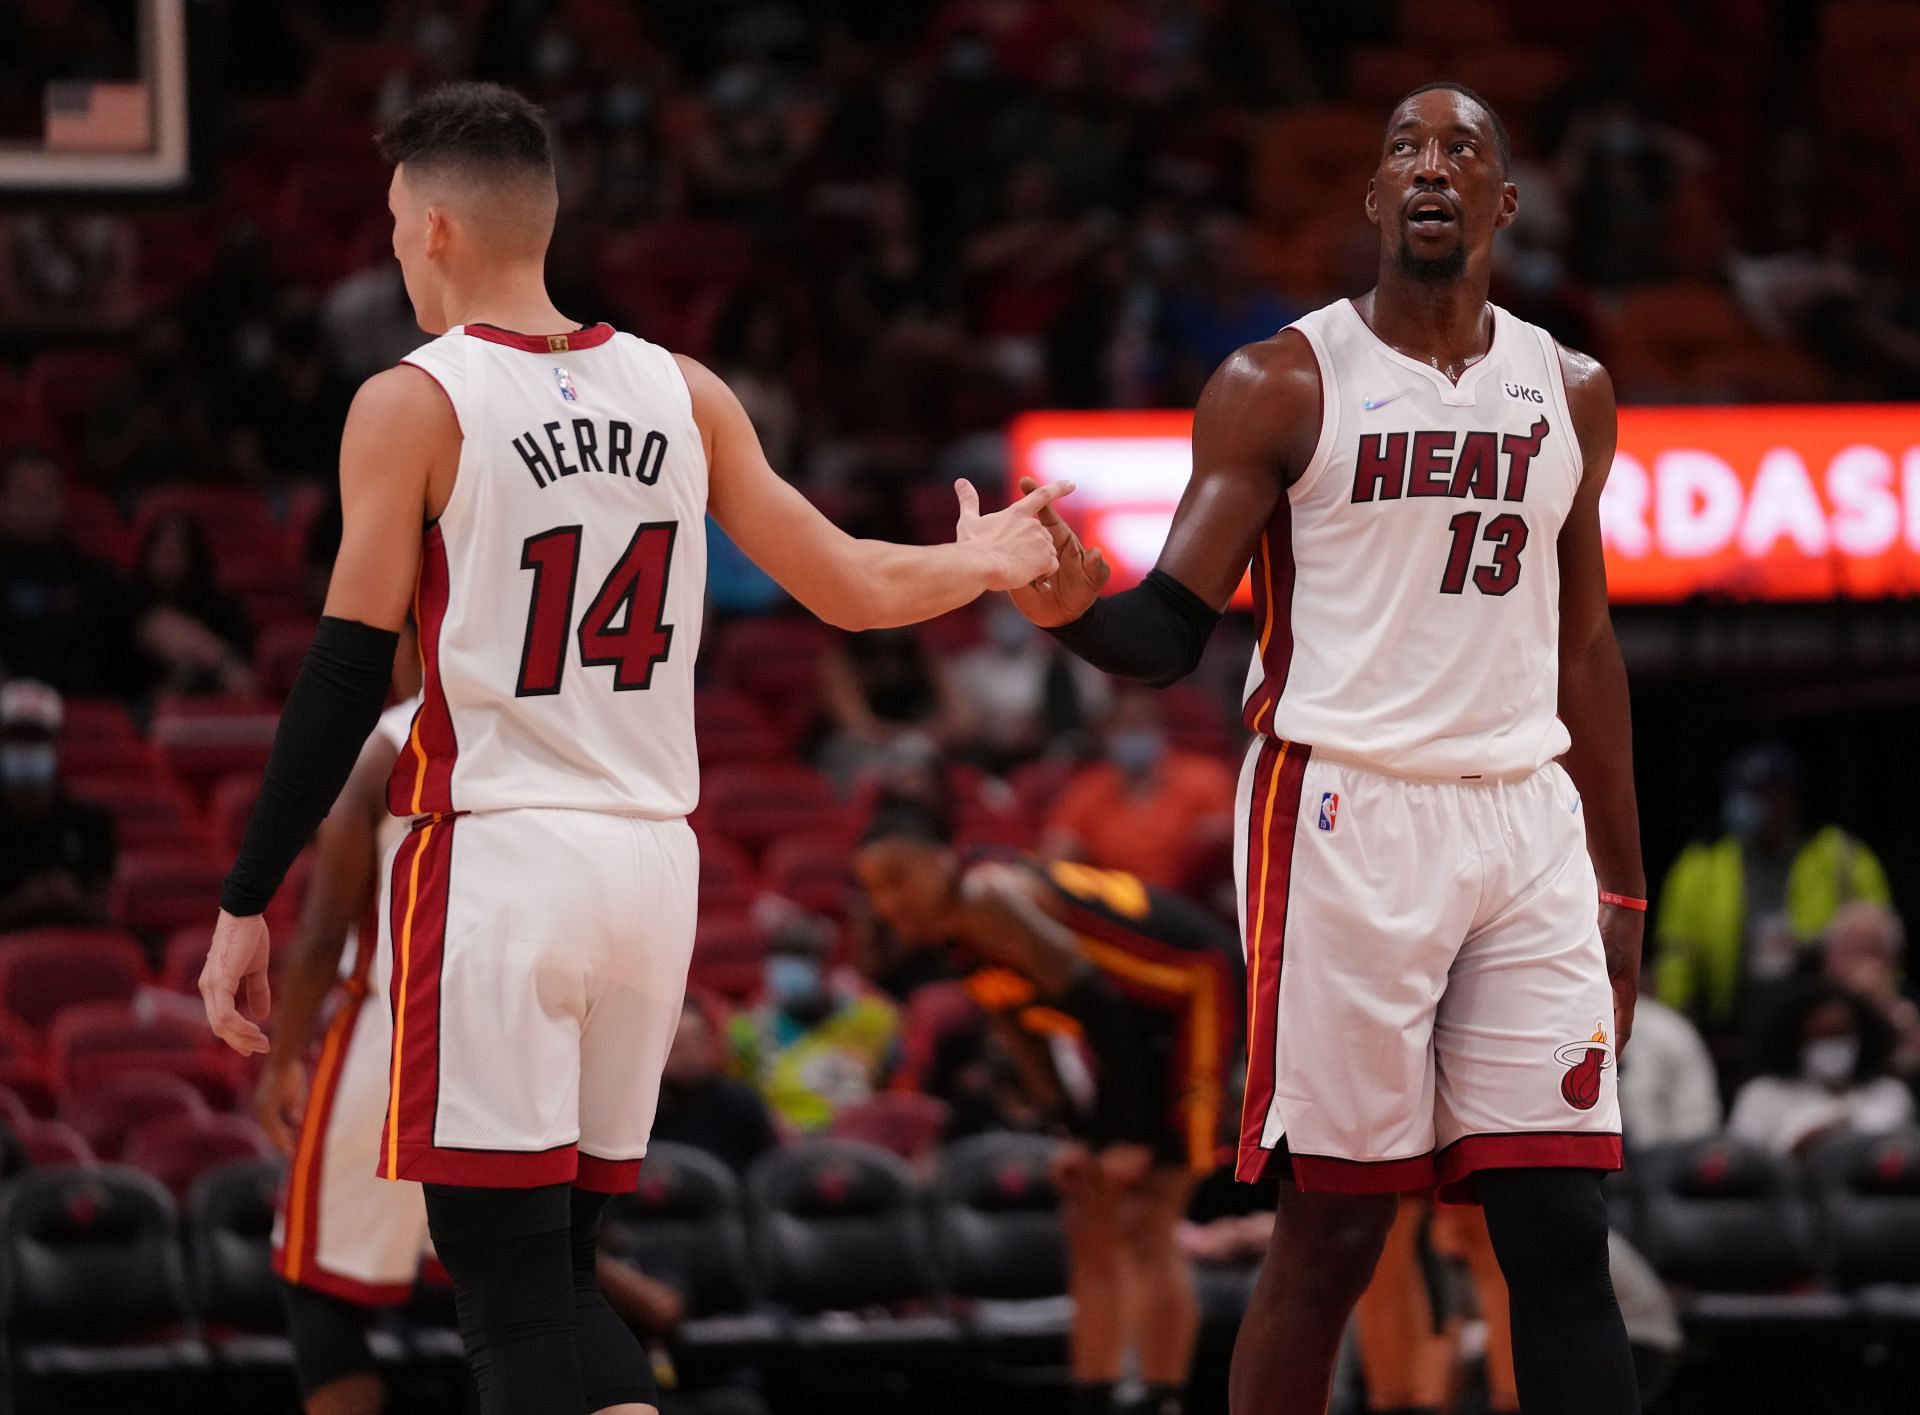 Miami Heat players Tyler Herro and Bam Adebayo